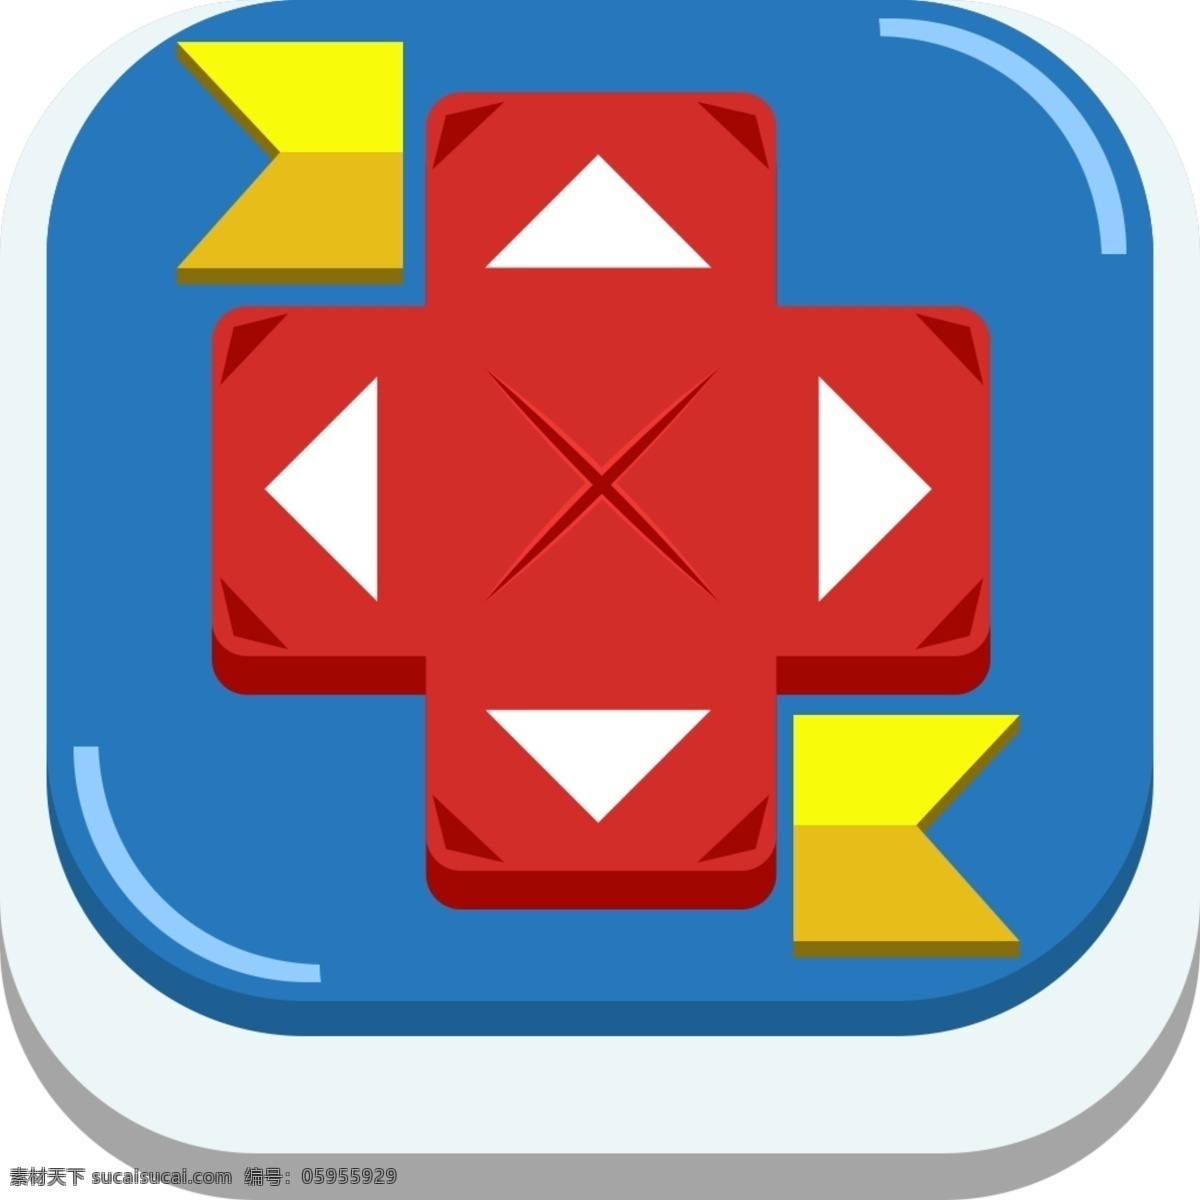 卡通 游戏 icon 游戏图标 上下左右 蓝色图标 红色图标 游戏键 游戏icon 卡通游戏图标 扁平图标 简约图标